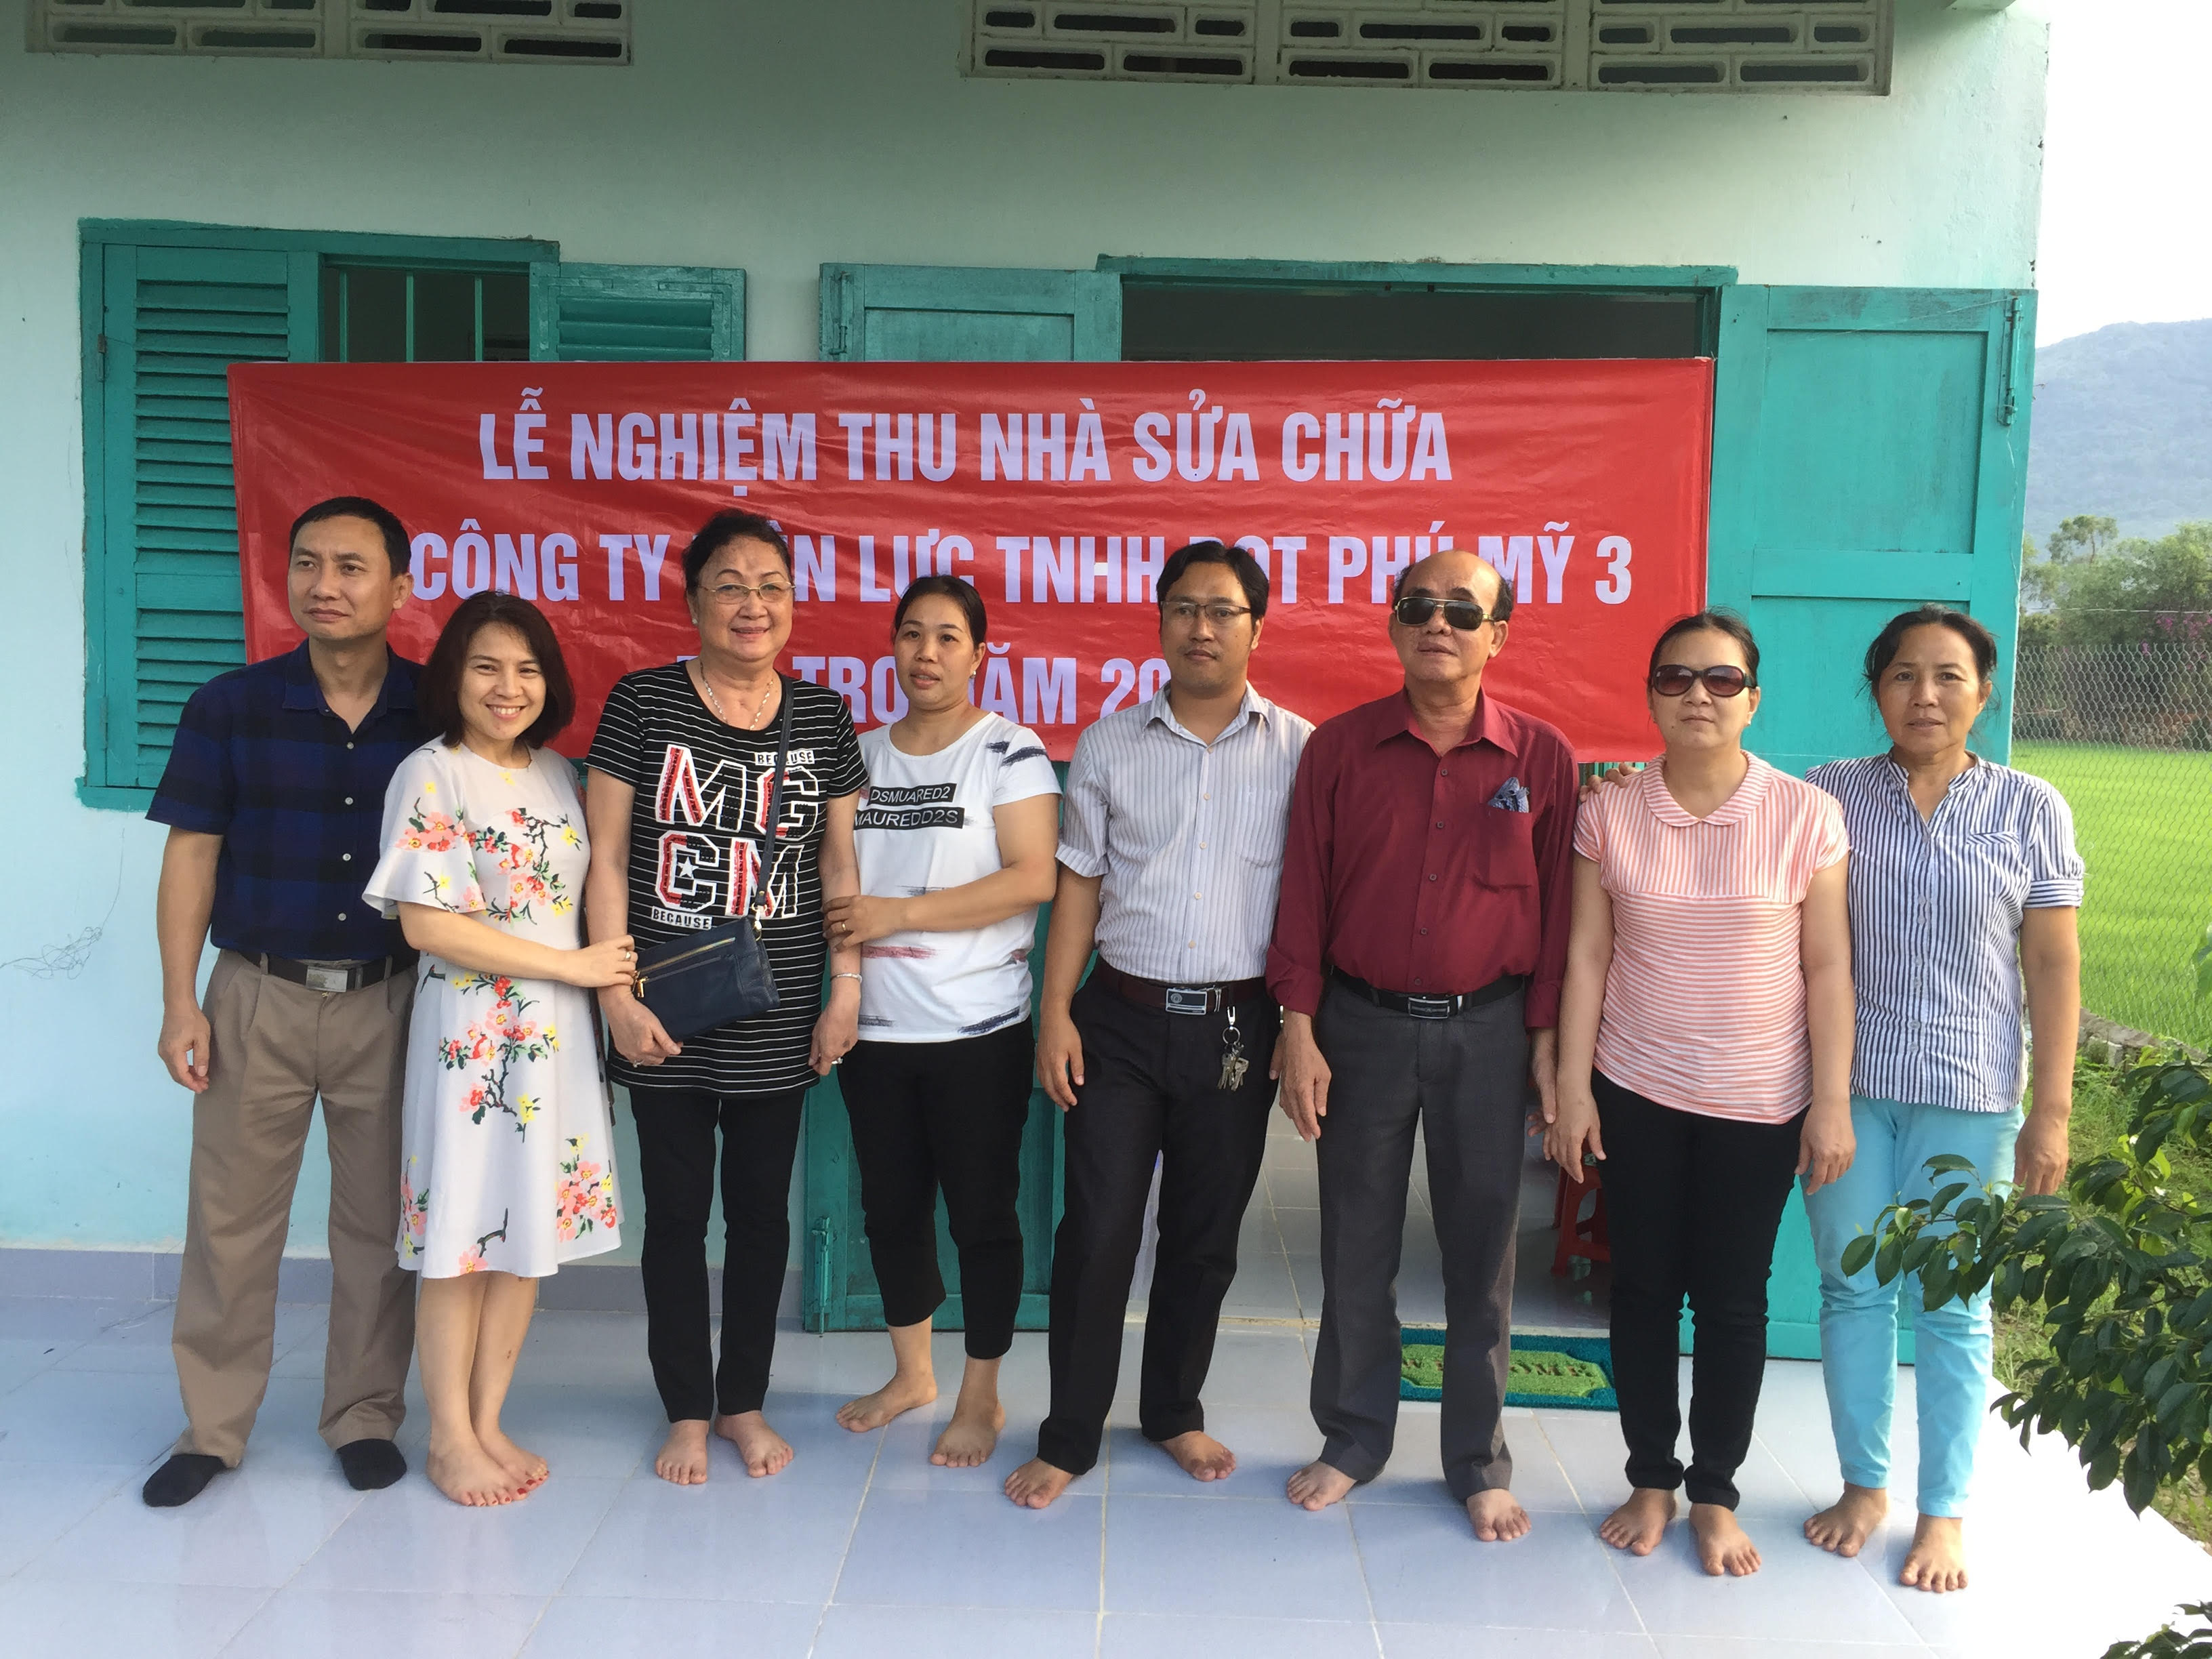 Gia đình em Huỳnh Nhật Thành (11 tuổi, TP.Bà Rịa) được Công ty Điện lực TNHH BOT Phú Mỹ 3 hỗ trợ 10 triệu đồng để sửa chữa nhà ở.